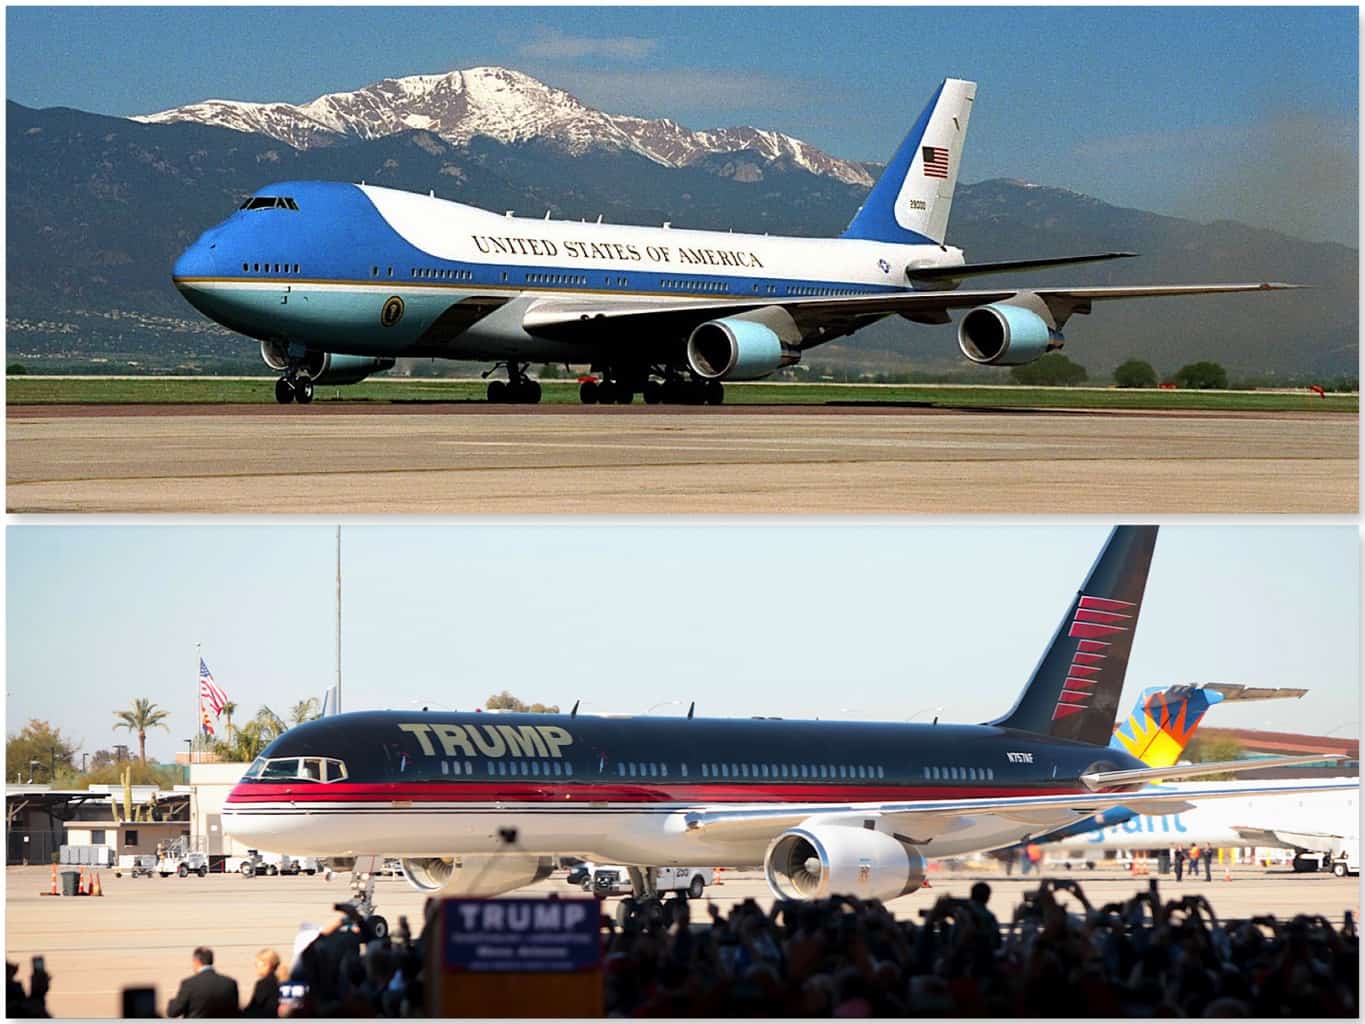 Avion privado de Trump y Air Force One